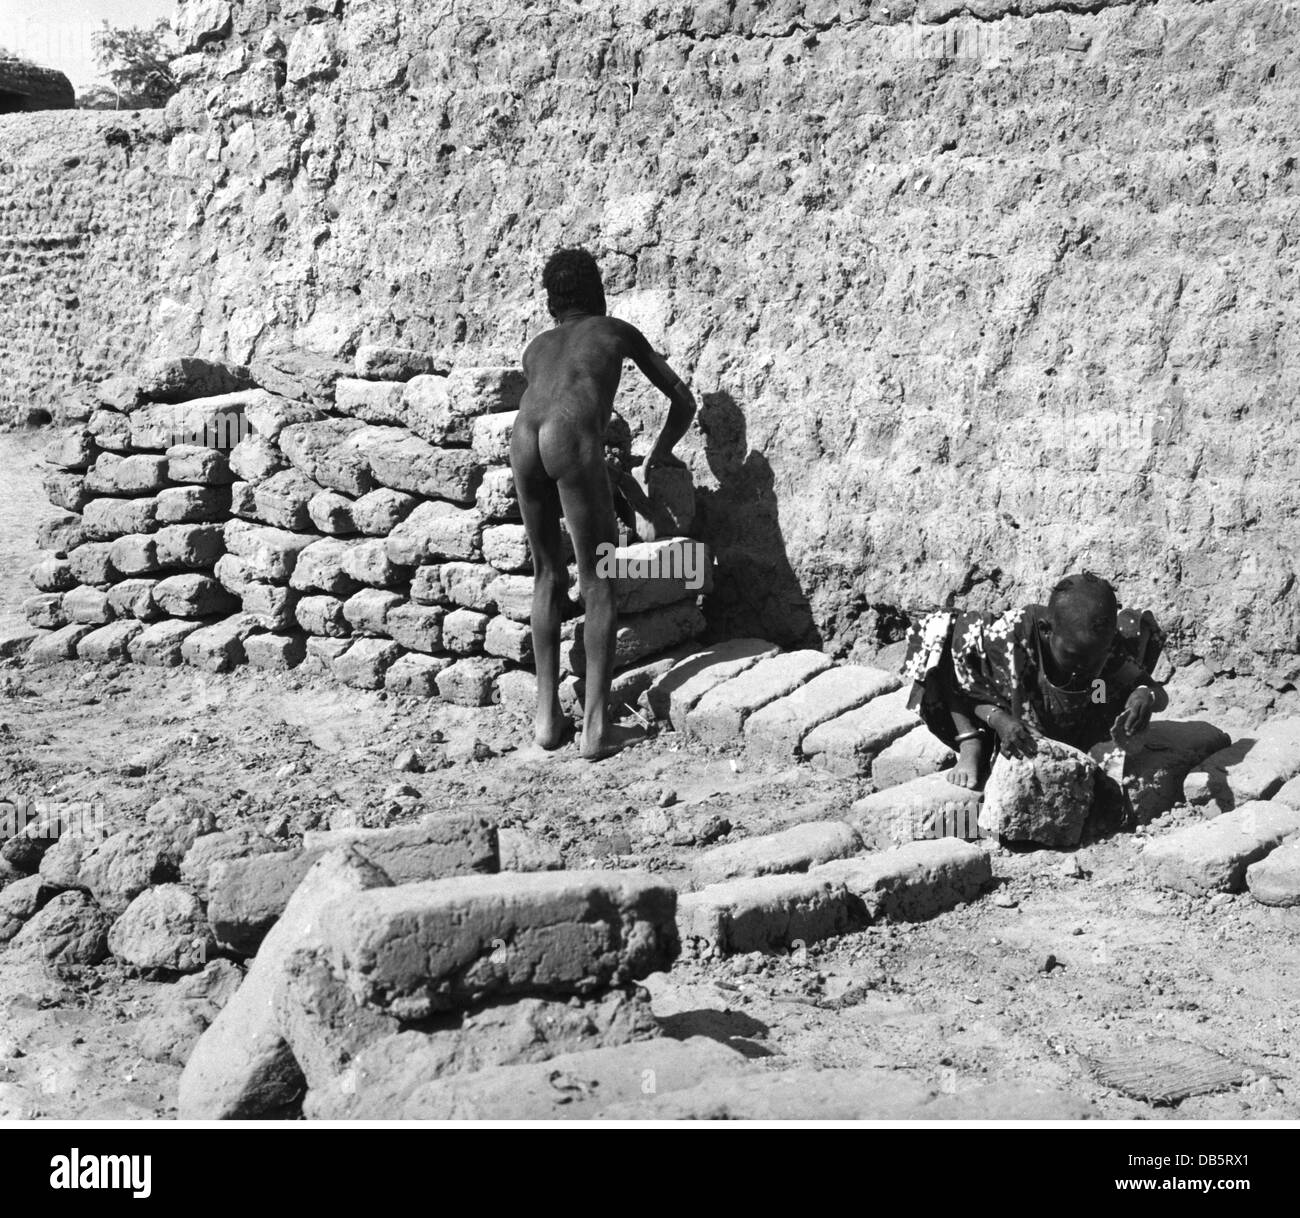 Geografia / viaggio, Sudafrica, persone, due persone native che fanno mattoni di argilla, circa anni '50, diritti aggiuntivi-clearences-non disponibile Foto Stock